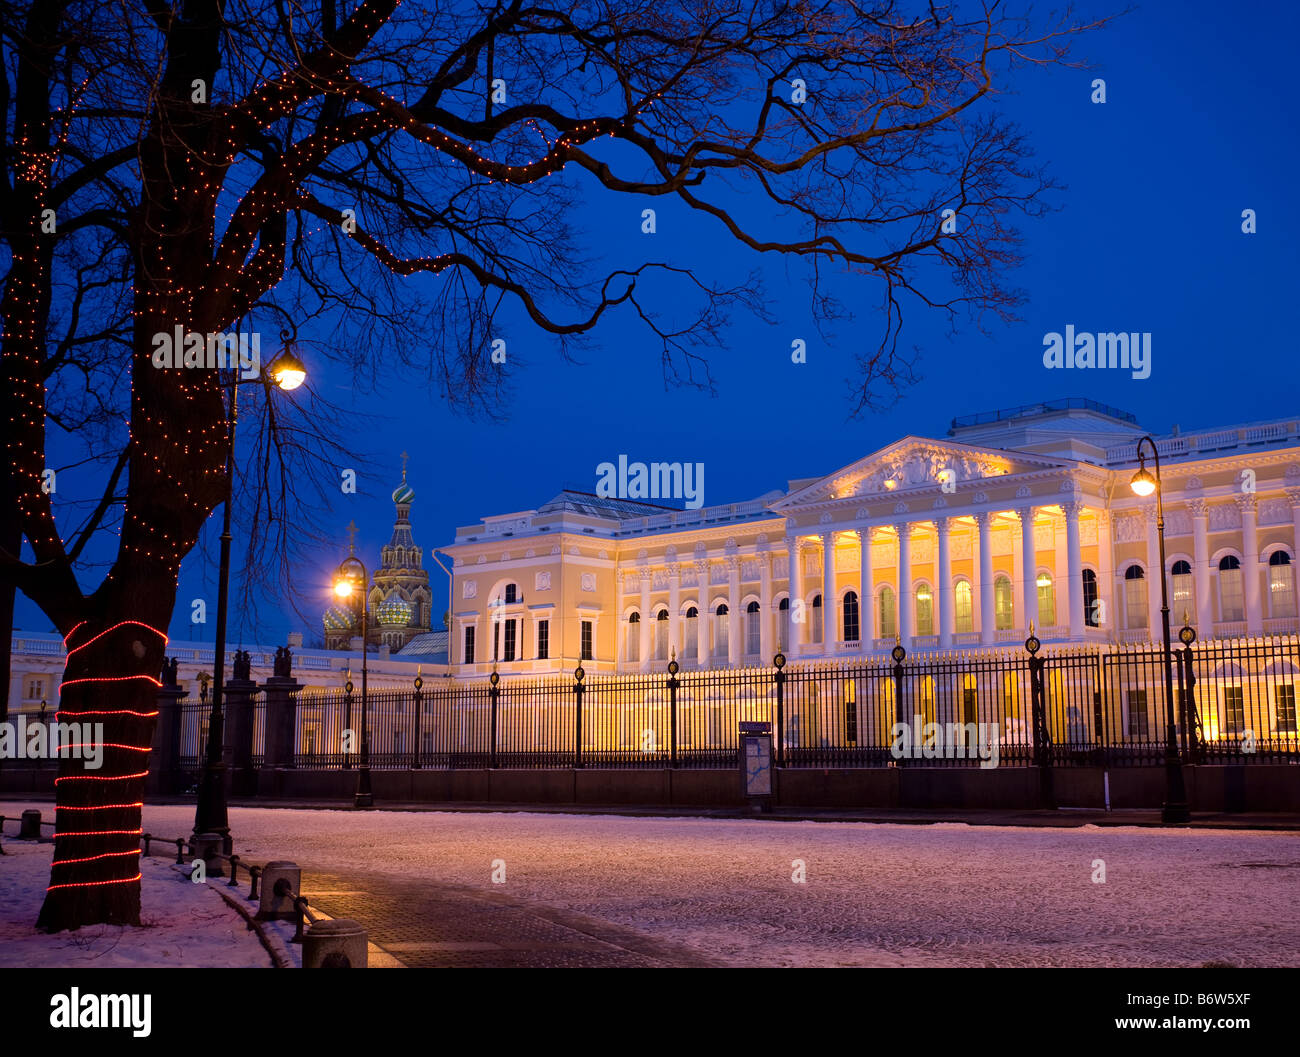 Deko-Licht-design die Stämme der Bäume LED Girlanden. Dem staatlichen russischen Museum, Sankt Petersburg, Russland. Stockfoto